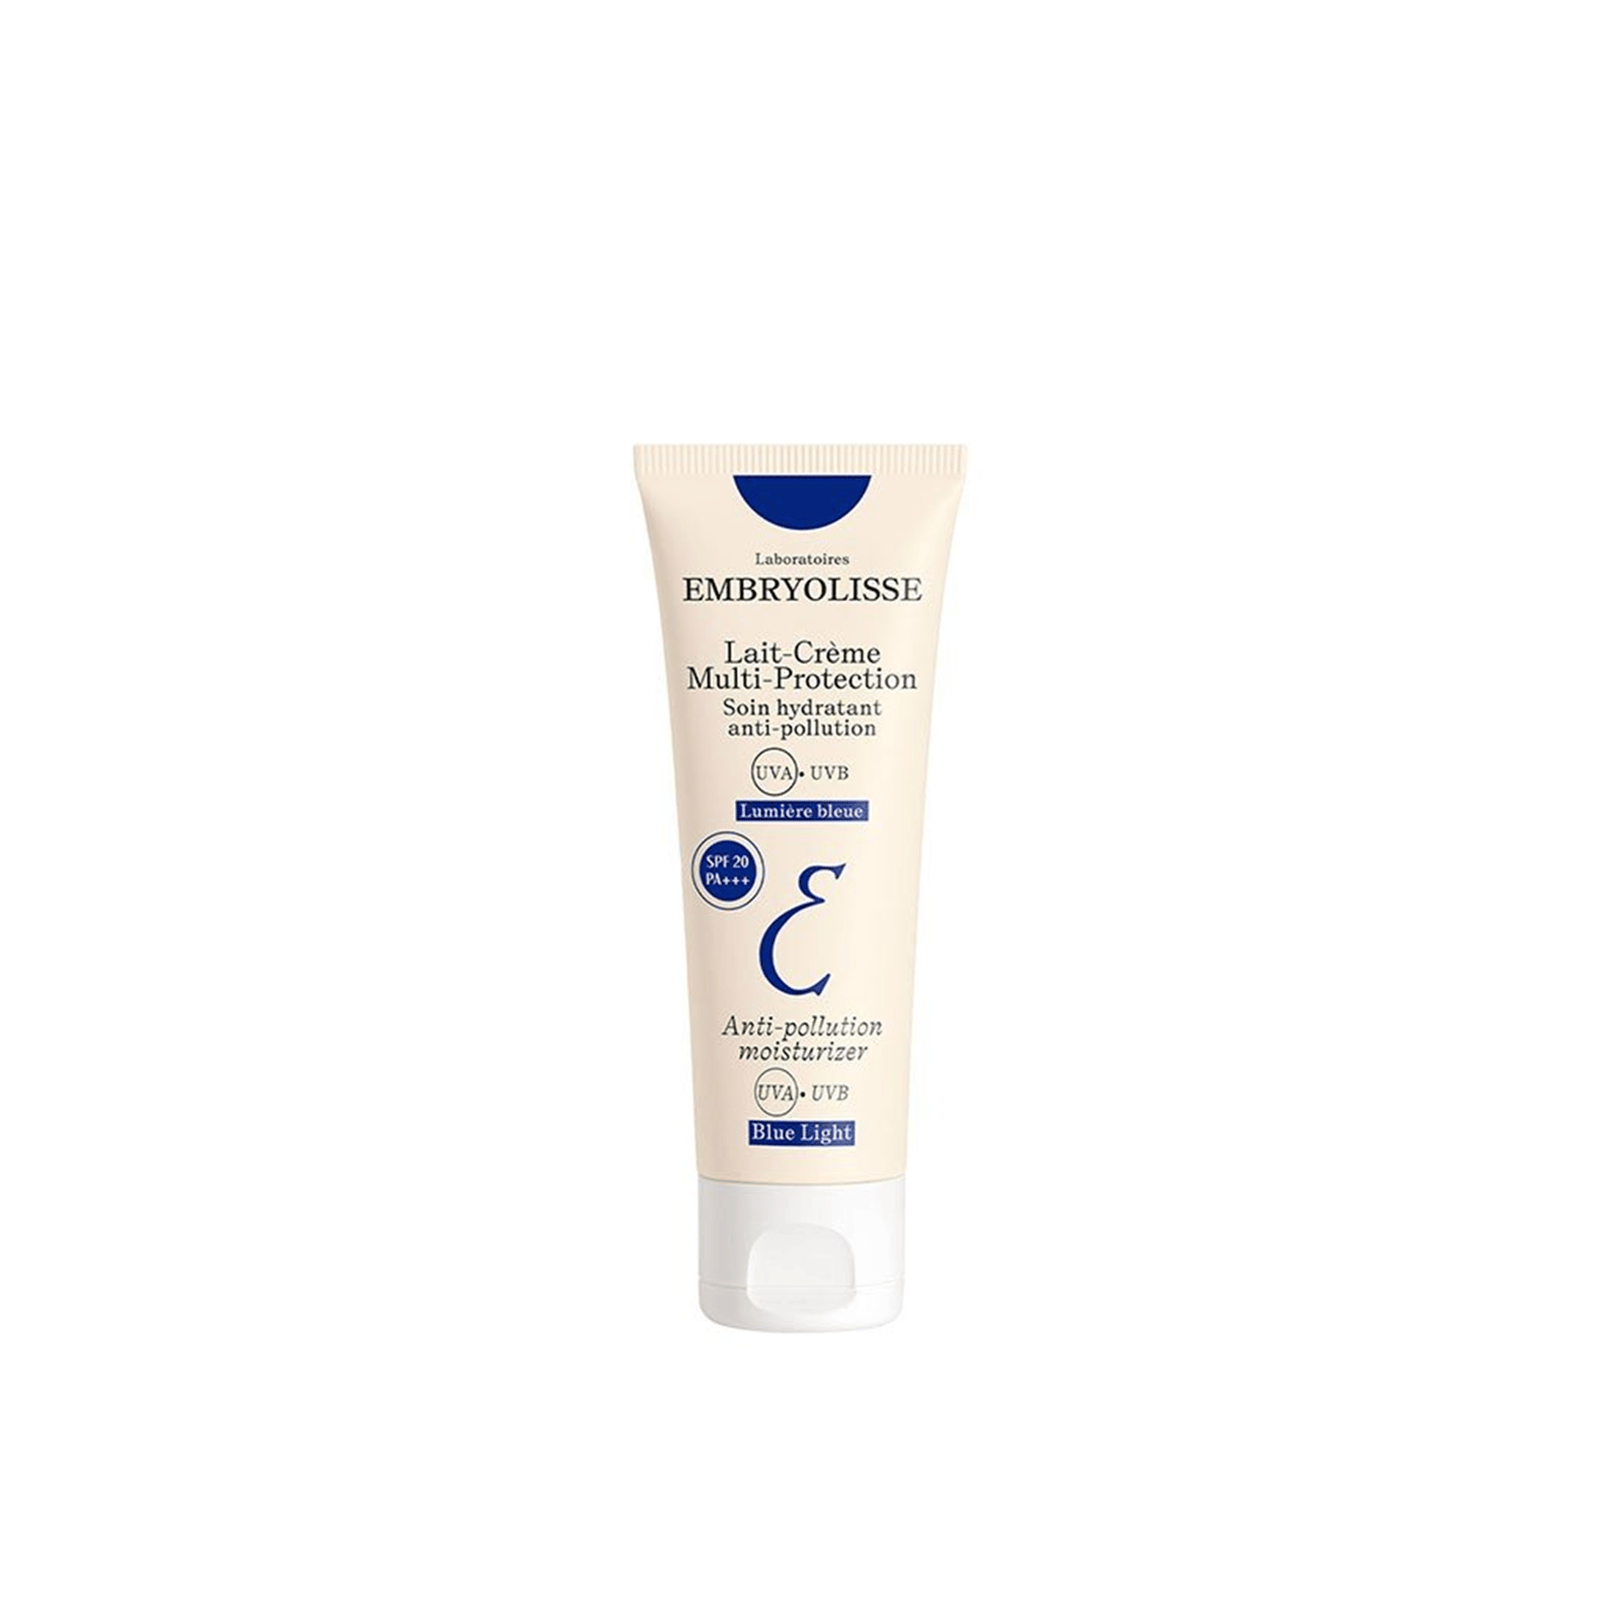 Embryolisse Lait-Crème Multi-Protection SPF20 40ml (1.35floz)